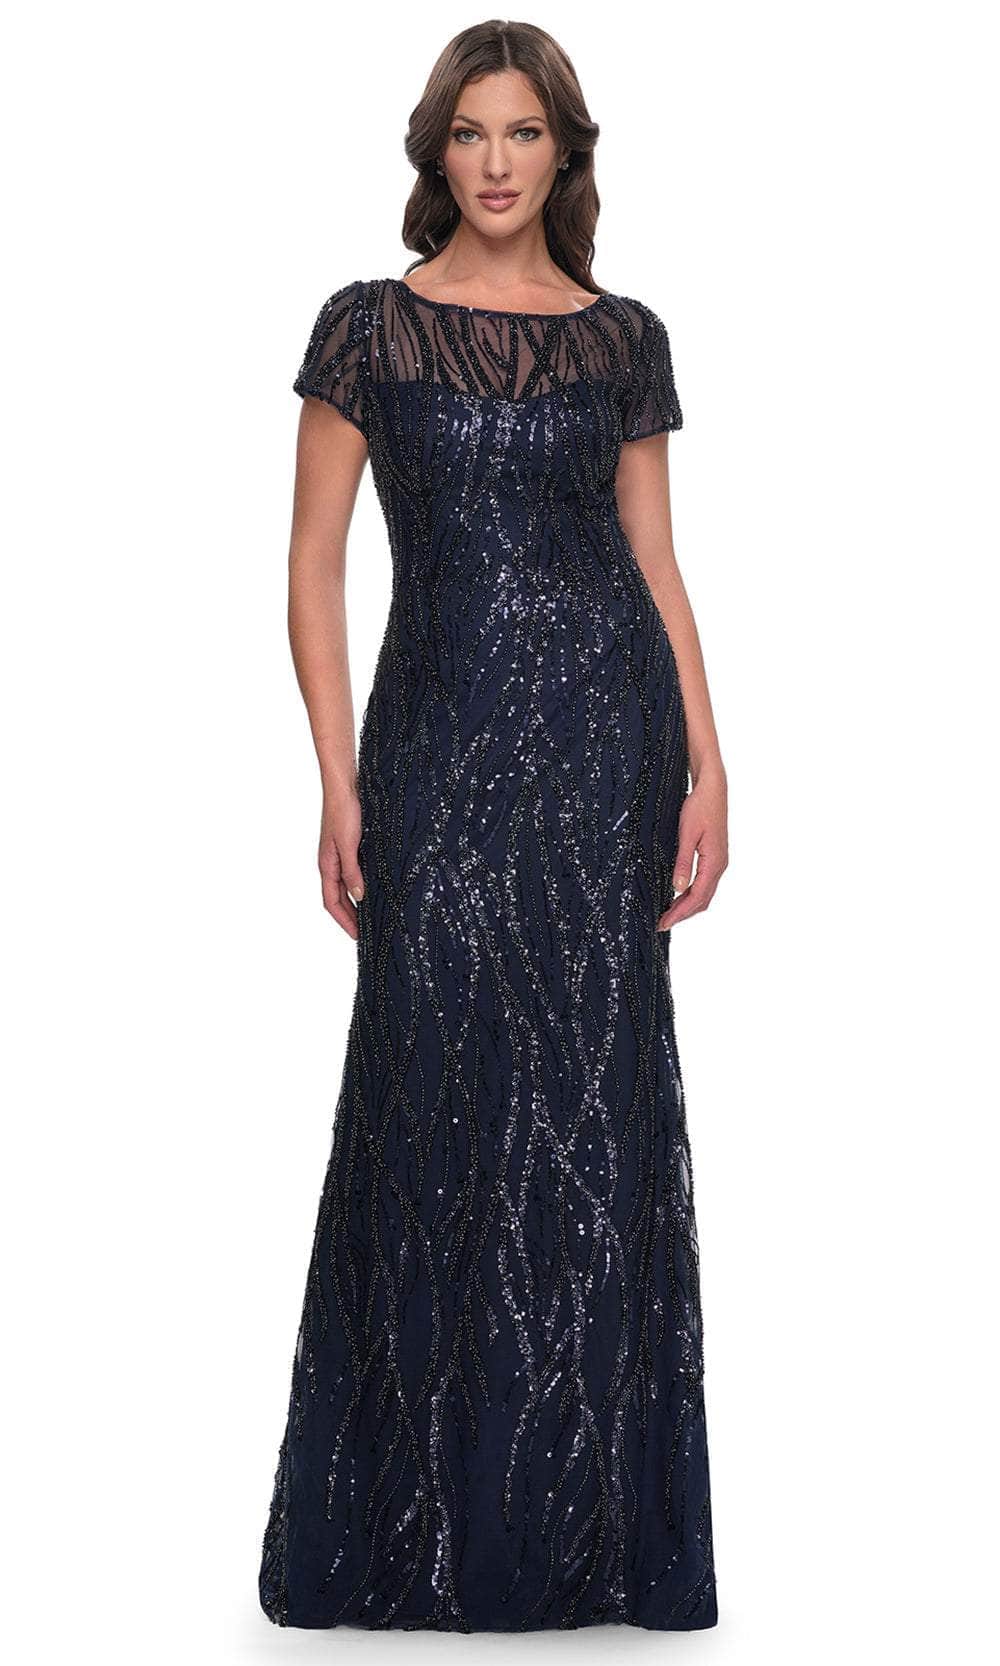 Image of La Femme 31005 - Illusion Neck Sequin Embellished Evening Dress